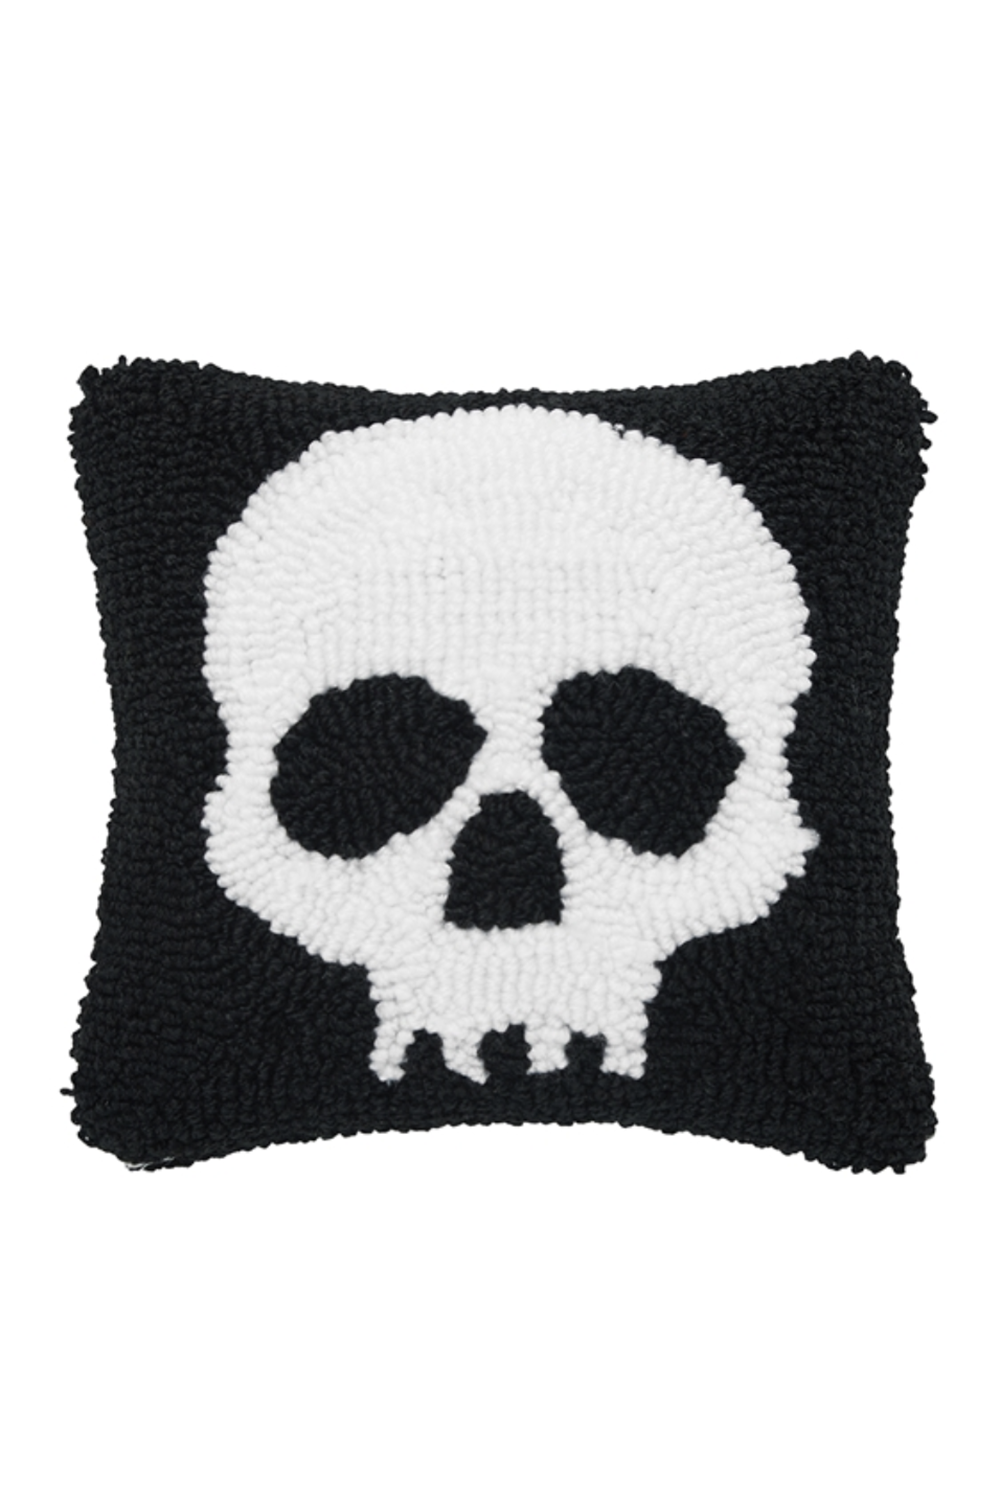 Mini Halloween Icon Pillow - Skull